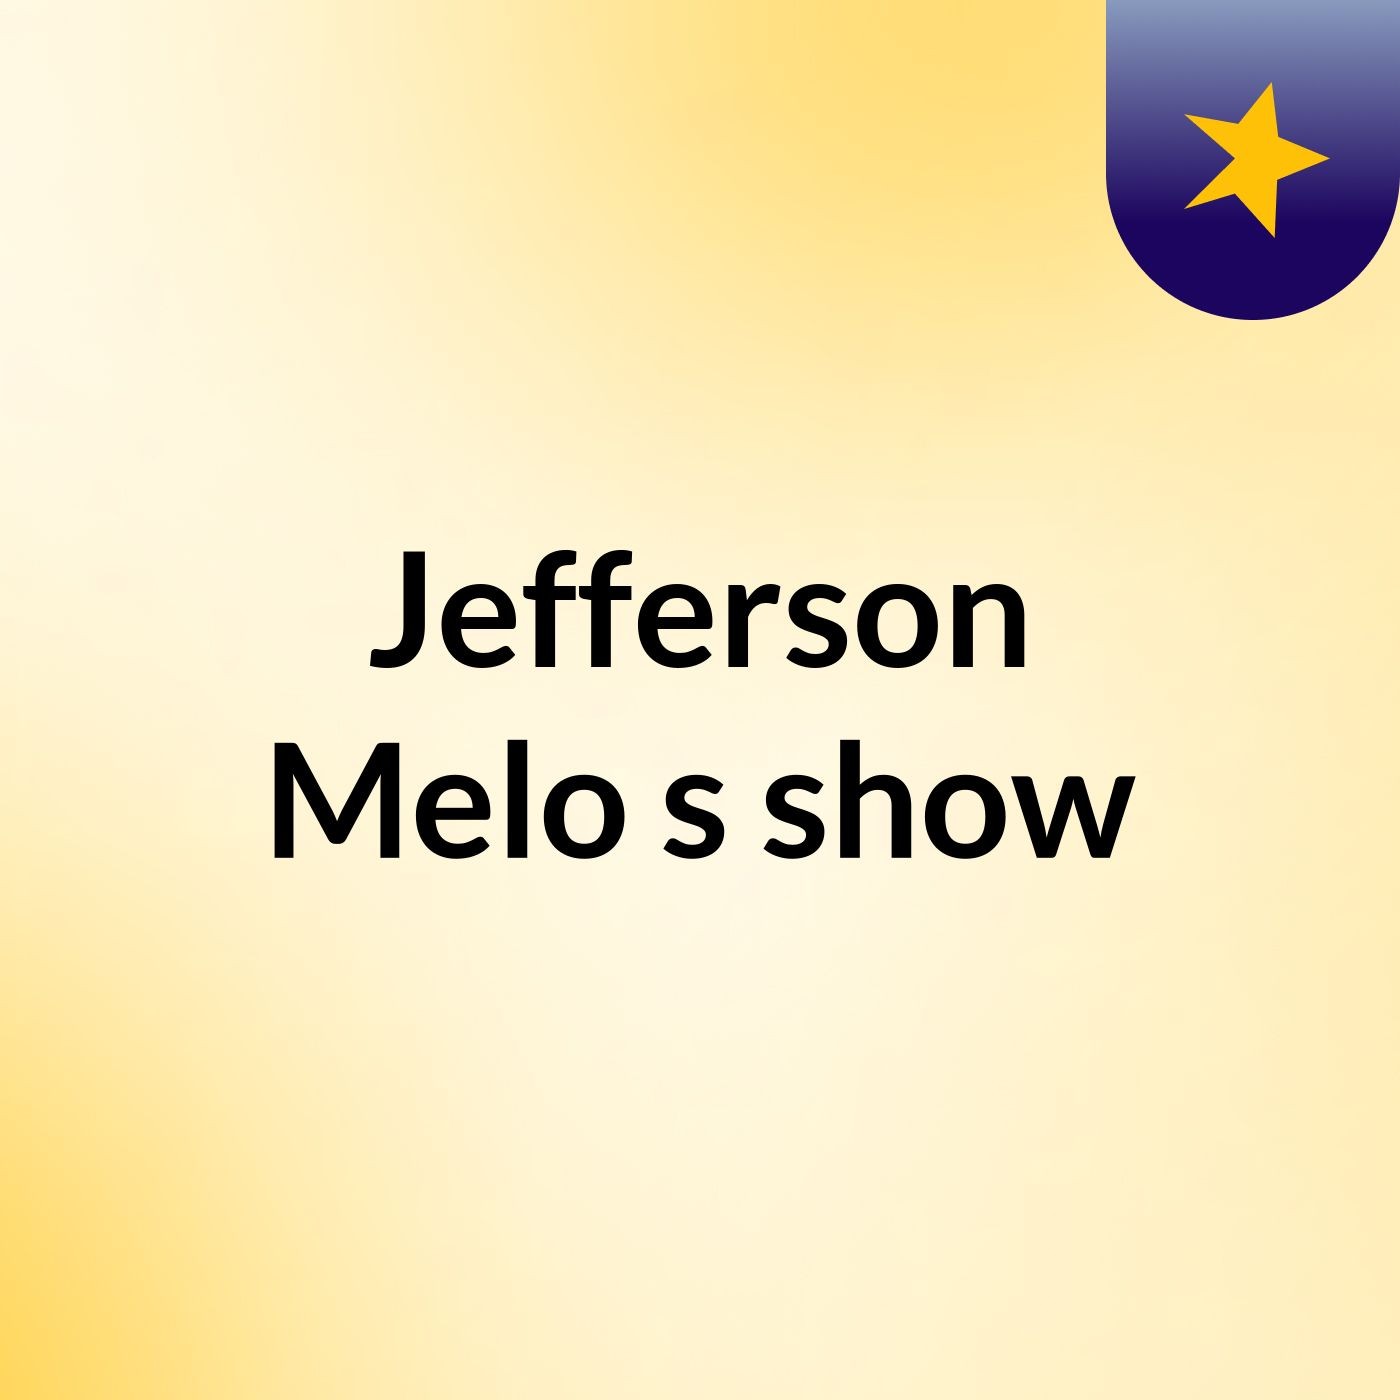 Jefferson Melo's show